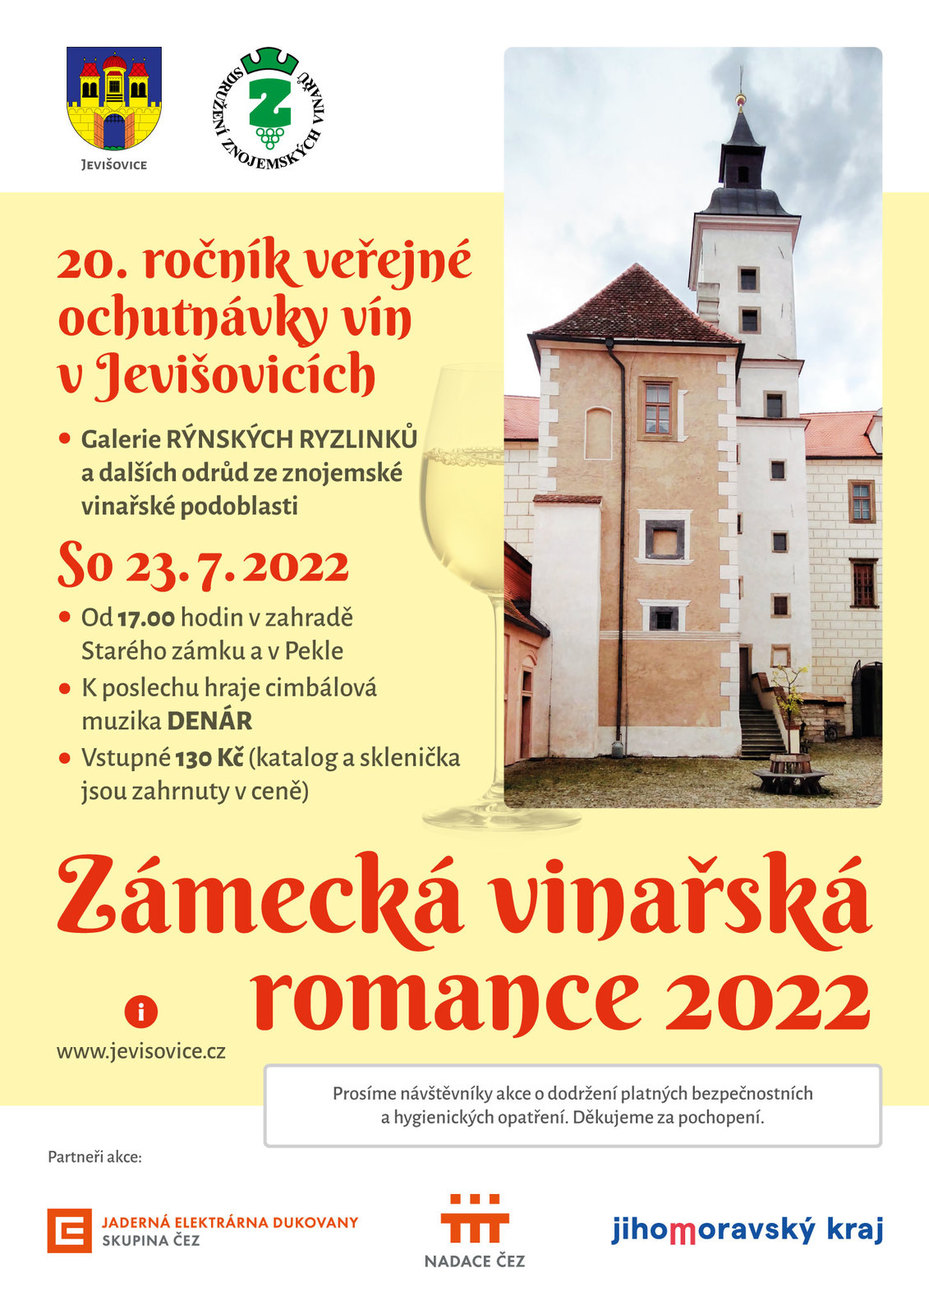 Zámecká vinařská romance 2022